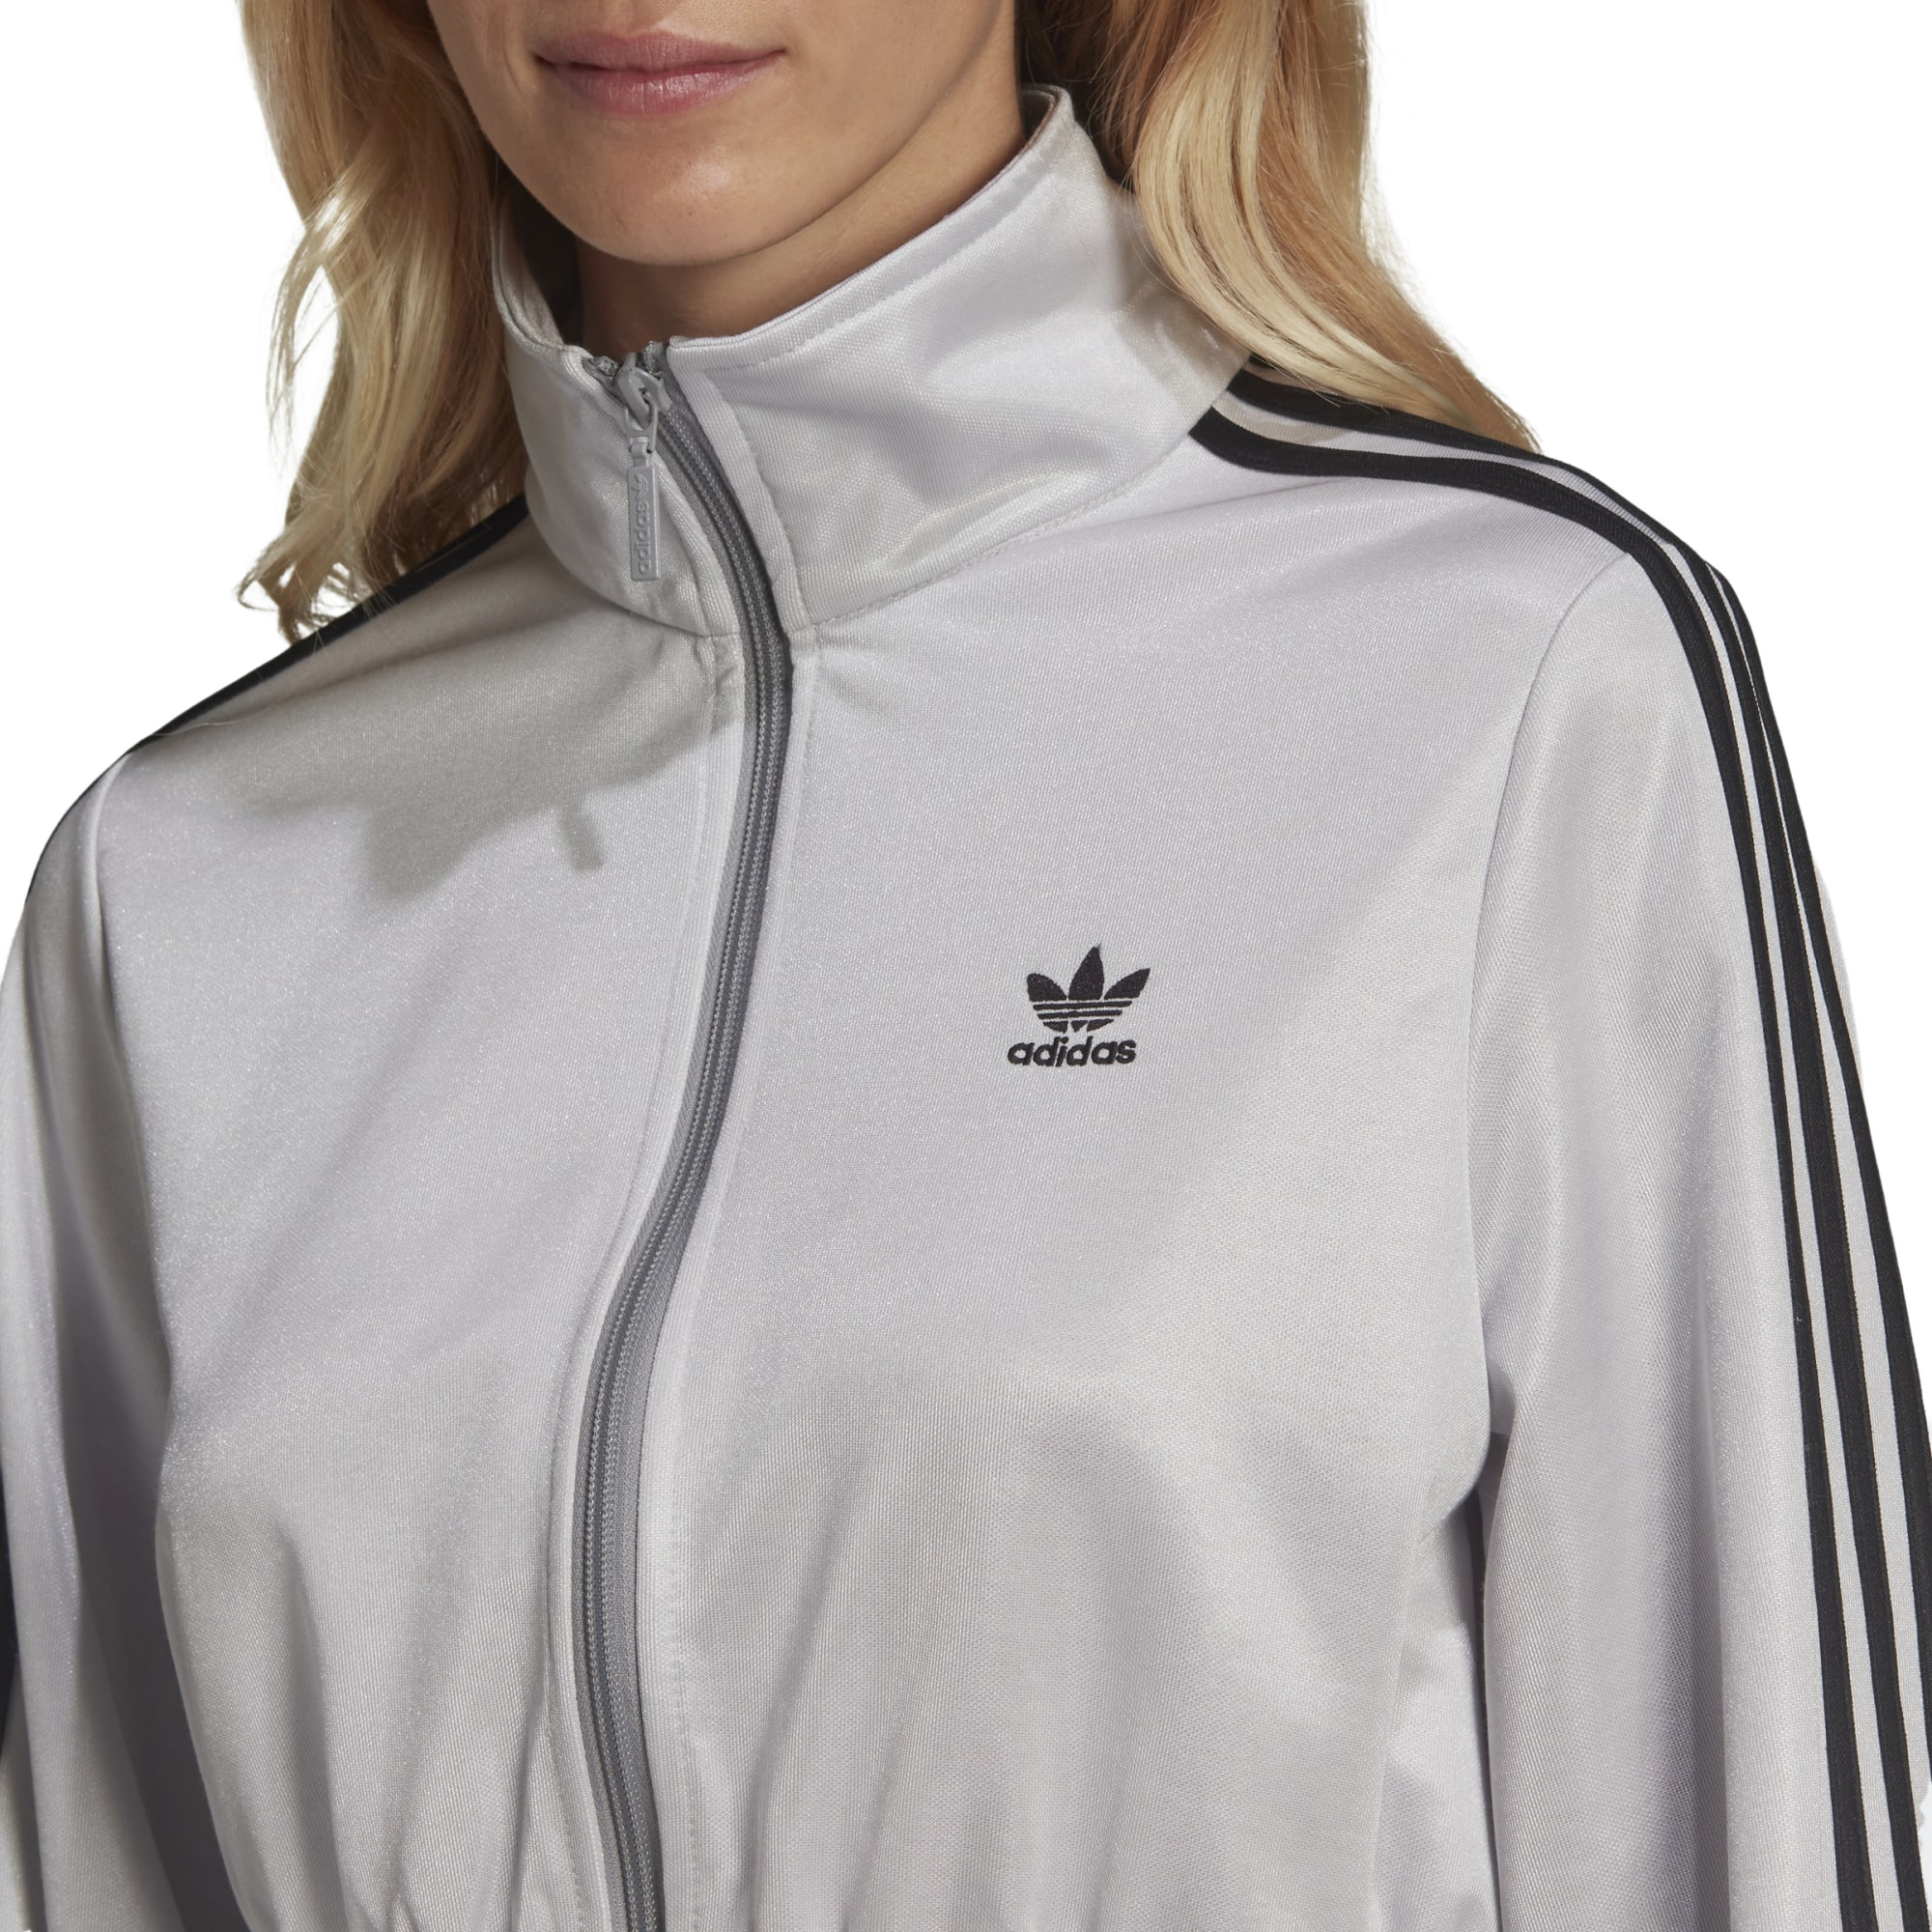 Олимпийка Adidas Track Top (HF7532) купить за 7 699 руб. в интернет-магазине